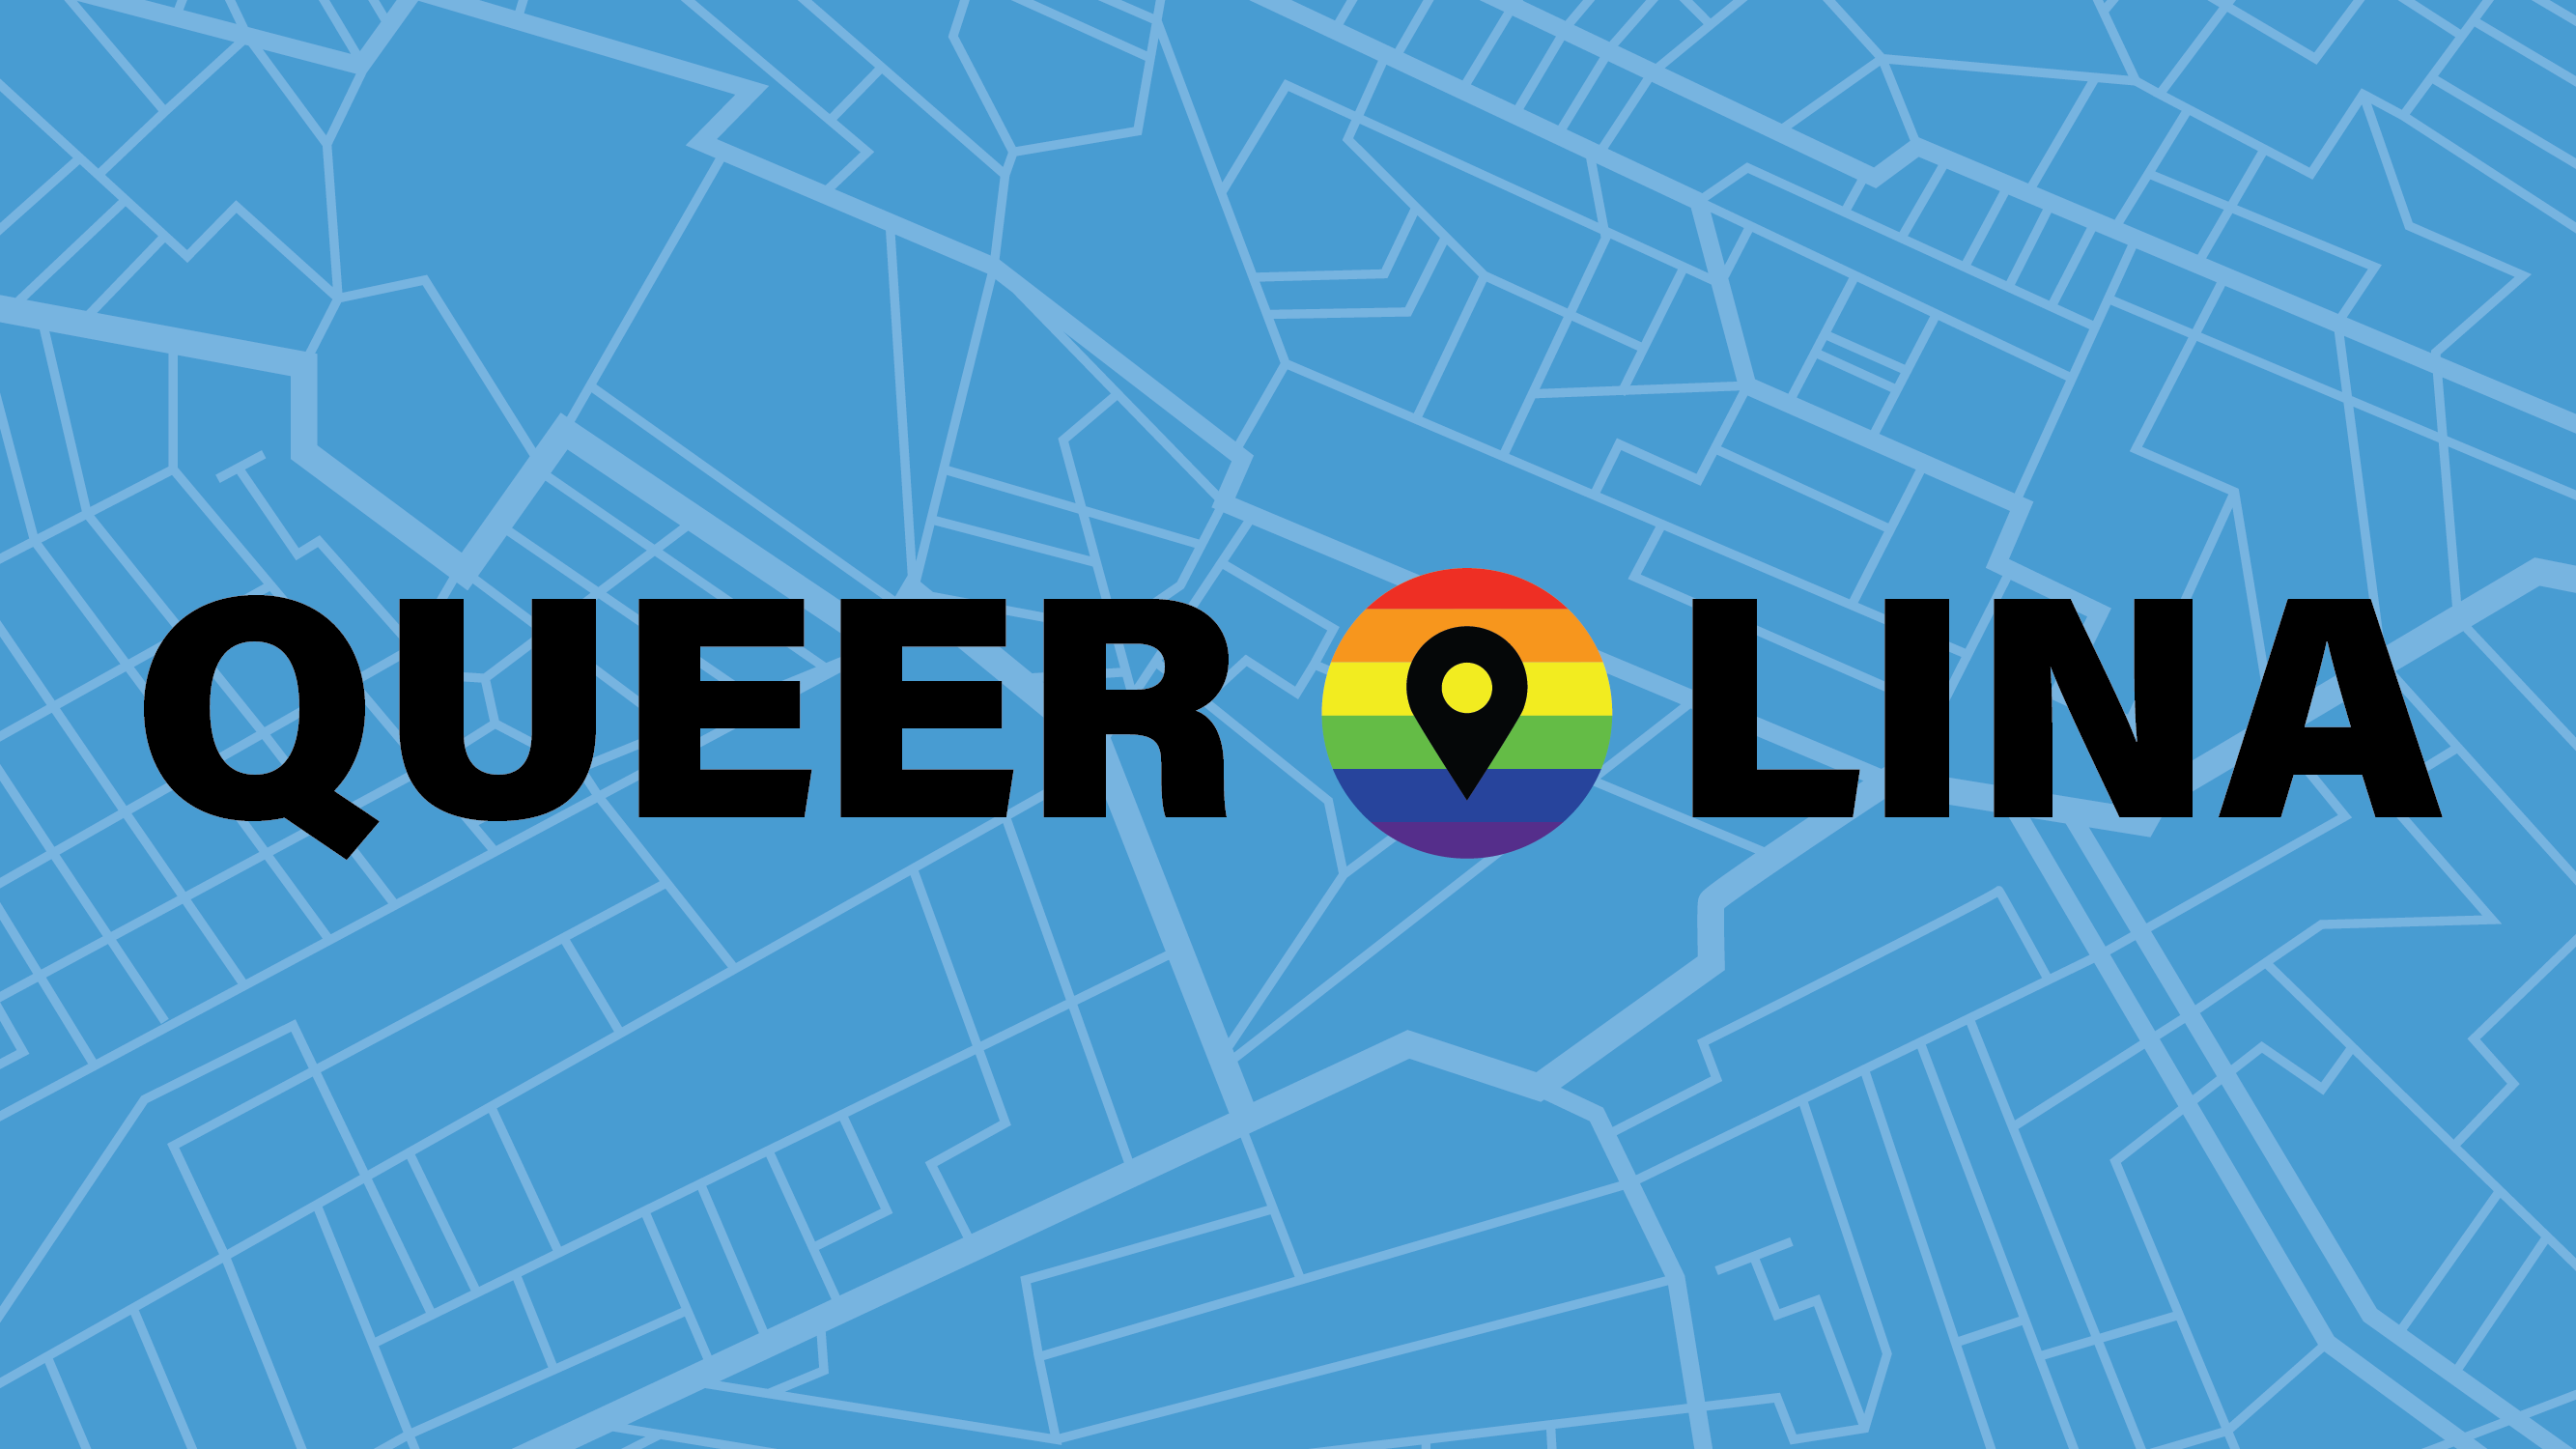 “Queerolina” online exhibition presents oral histories of LGBTQIA+ Tar Heels